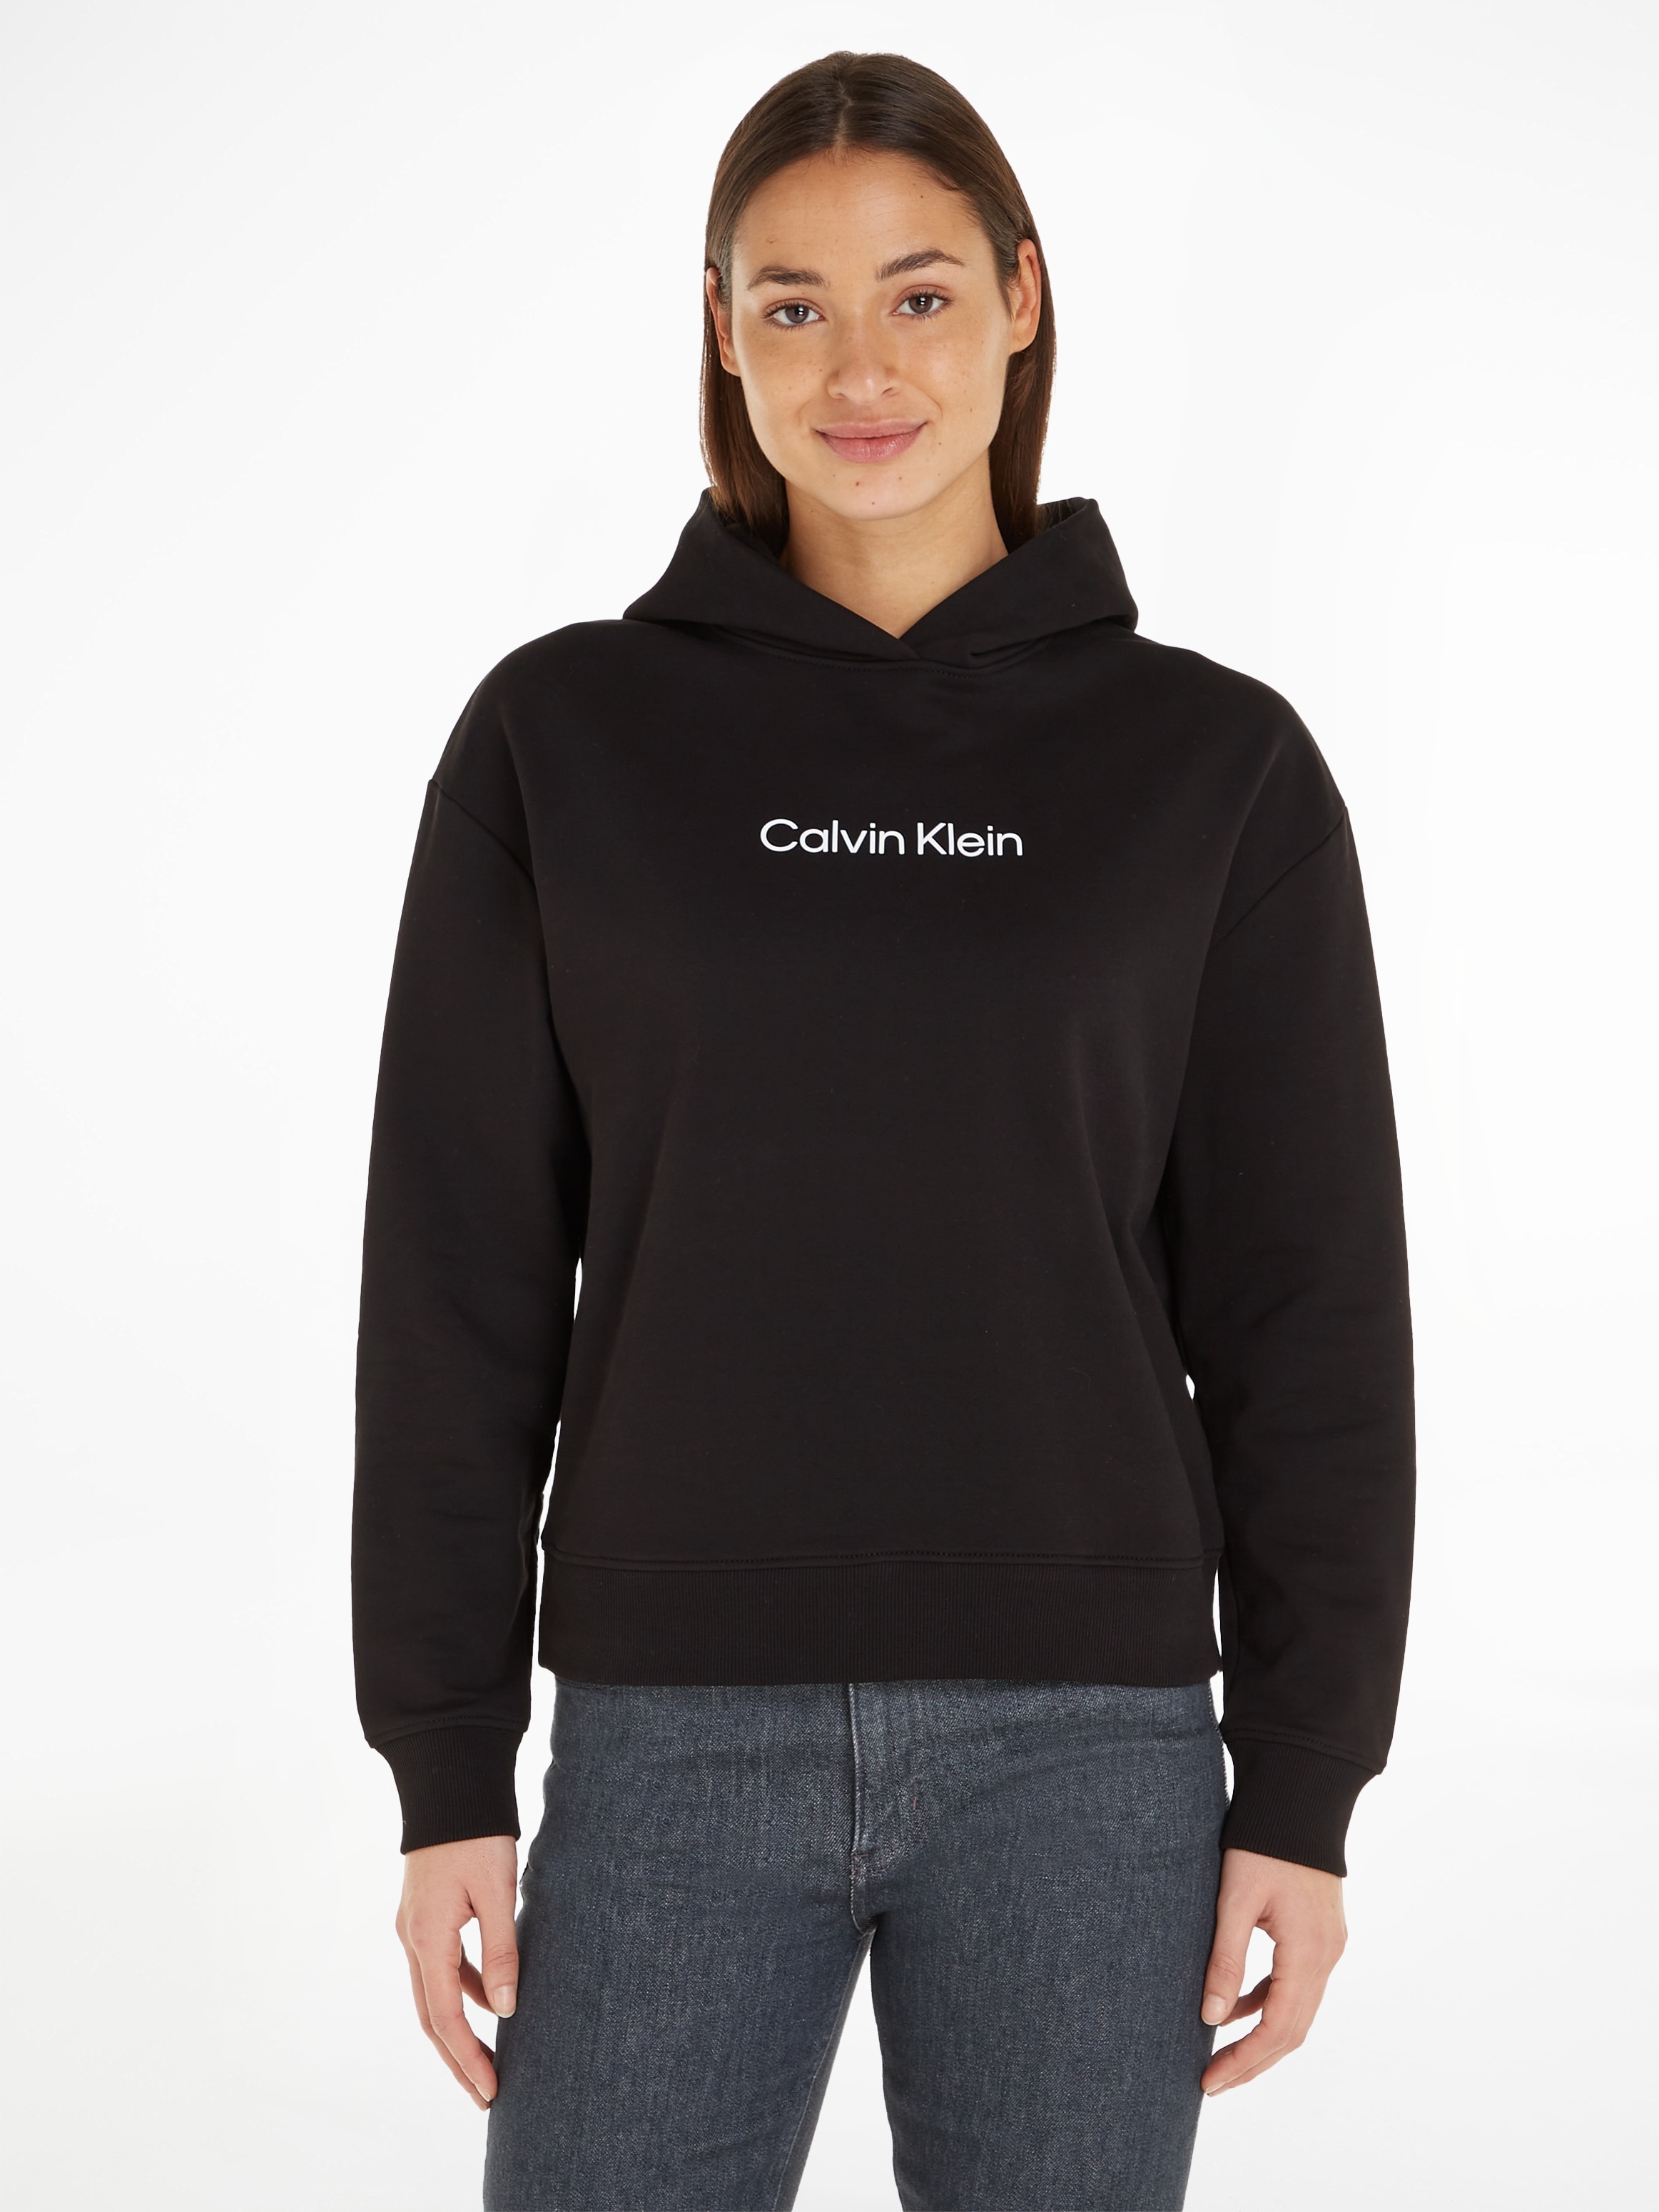 Calvin Klein Kapuzensweatshirt "HERO LOGO HOODY", mit Calvin Klein Logo auf der Brust